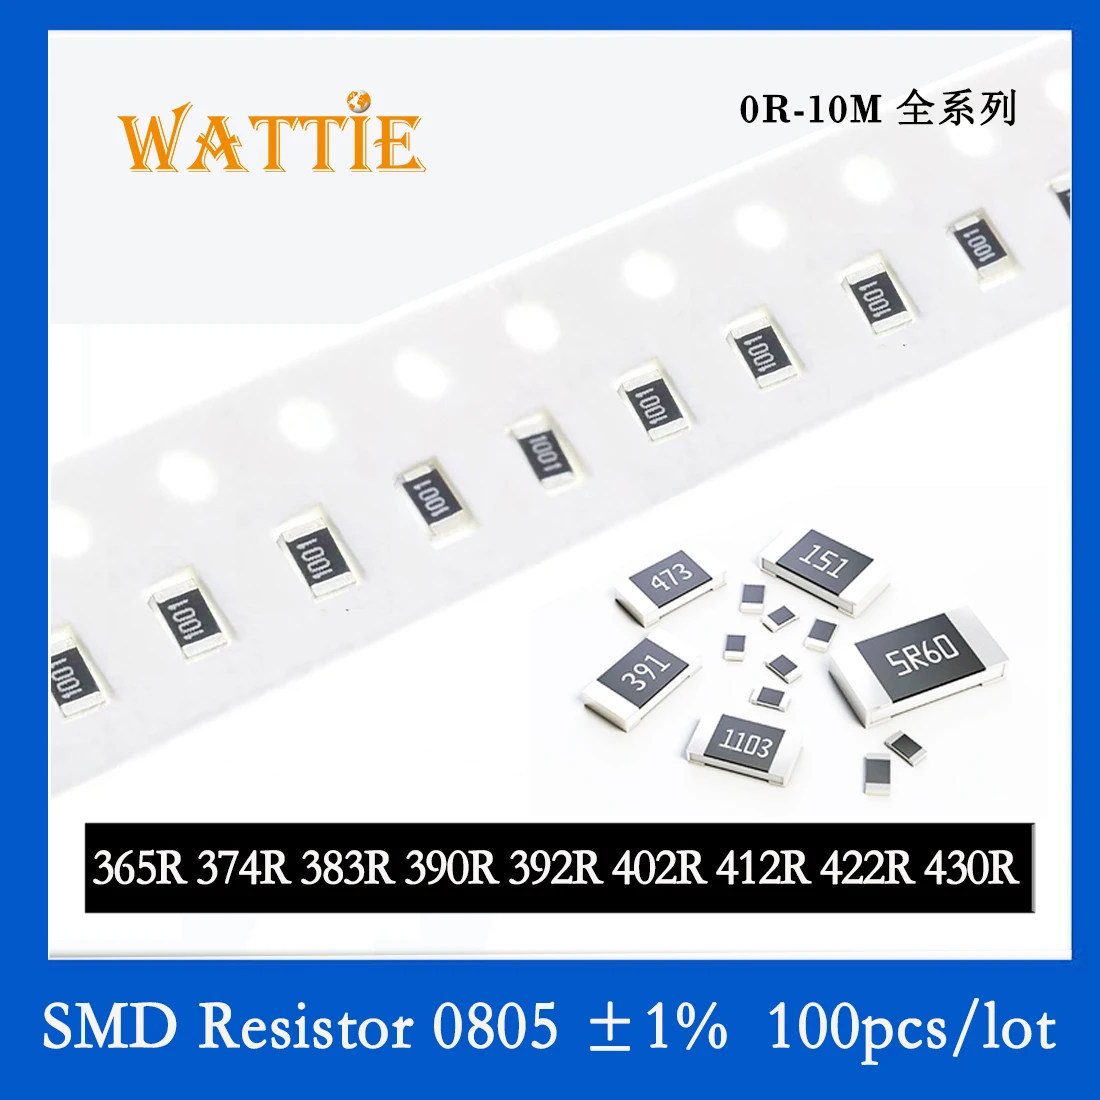 SMD резистор 0805 1% 365R 374R 383R 390R 392R 402R 412R 422R 430R 100 шт./лот микросхемные резисторы 1/8 Вт 2.0 мм * 1.2 мм